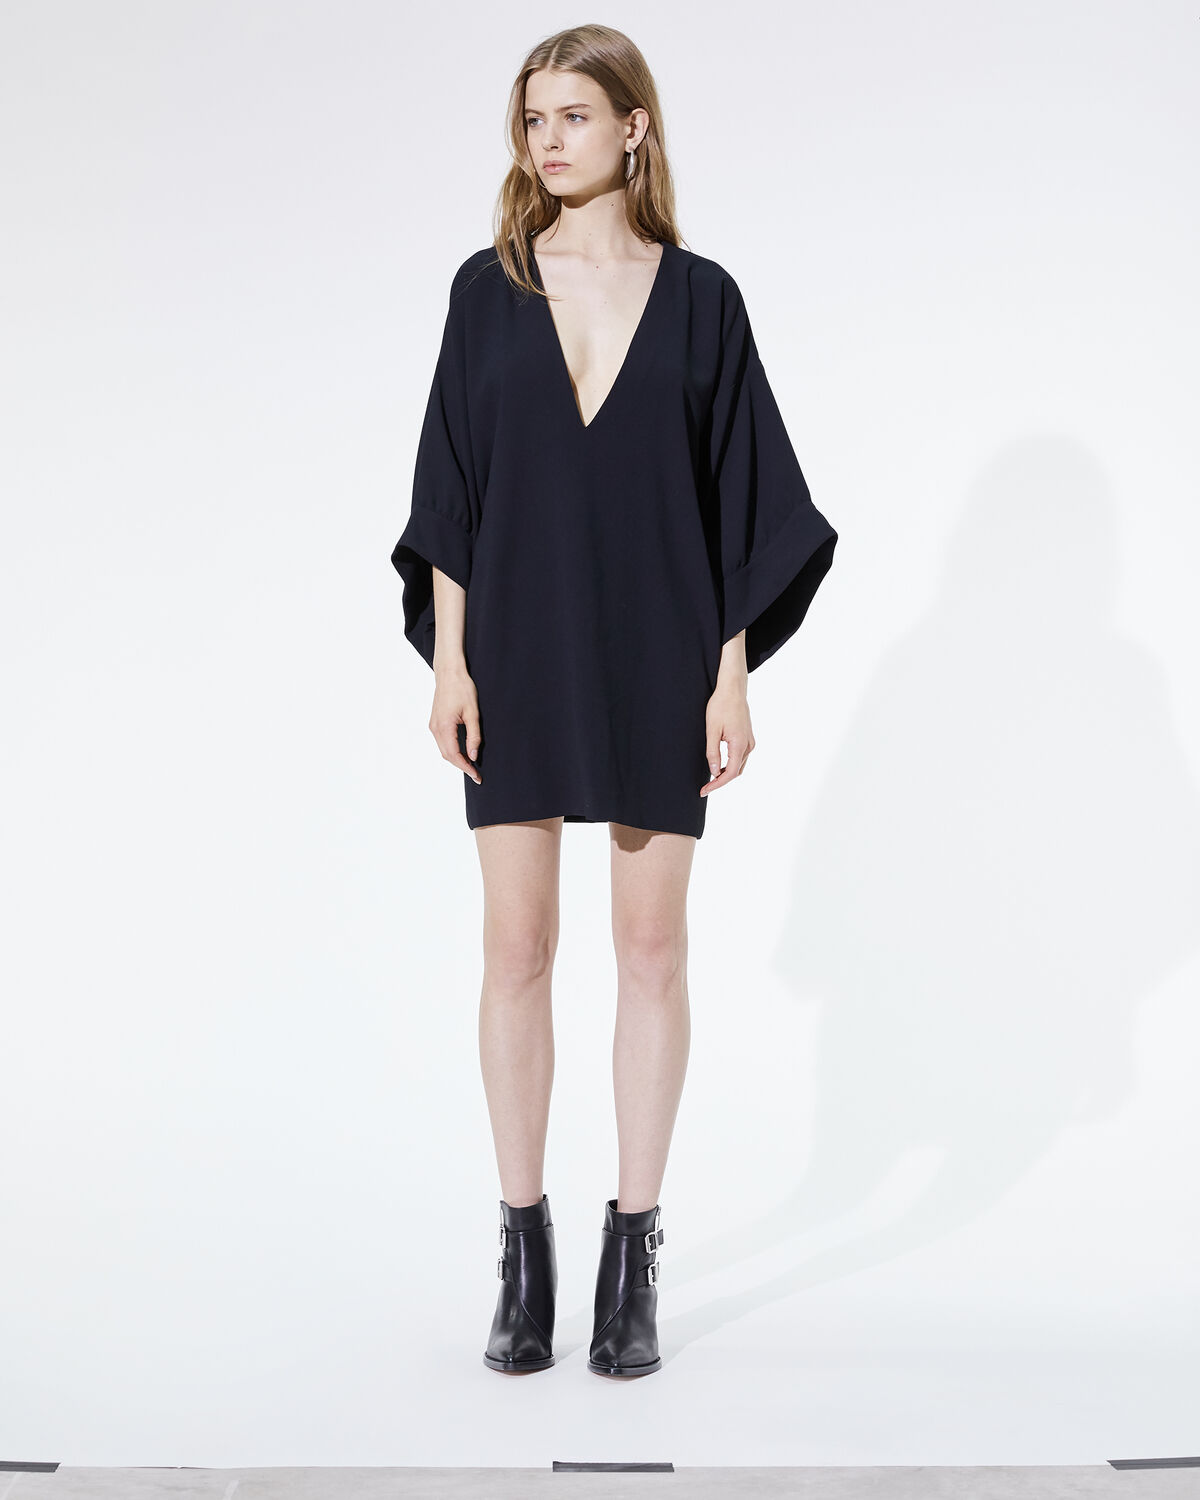 Bahoma Dress Black by IRO Paris